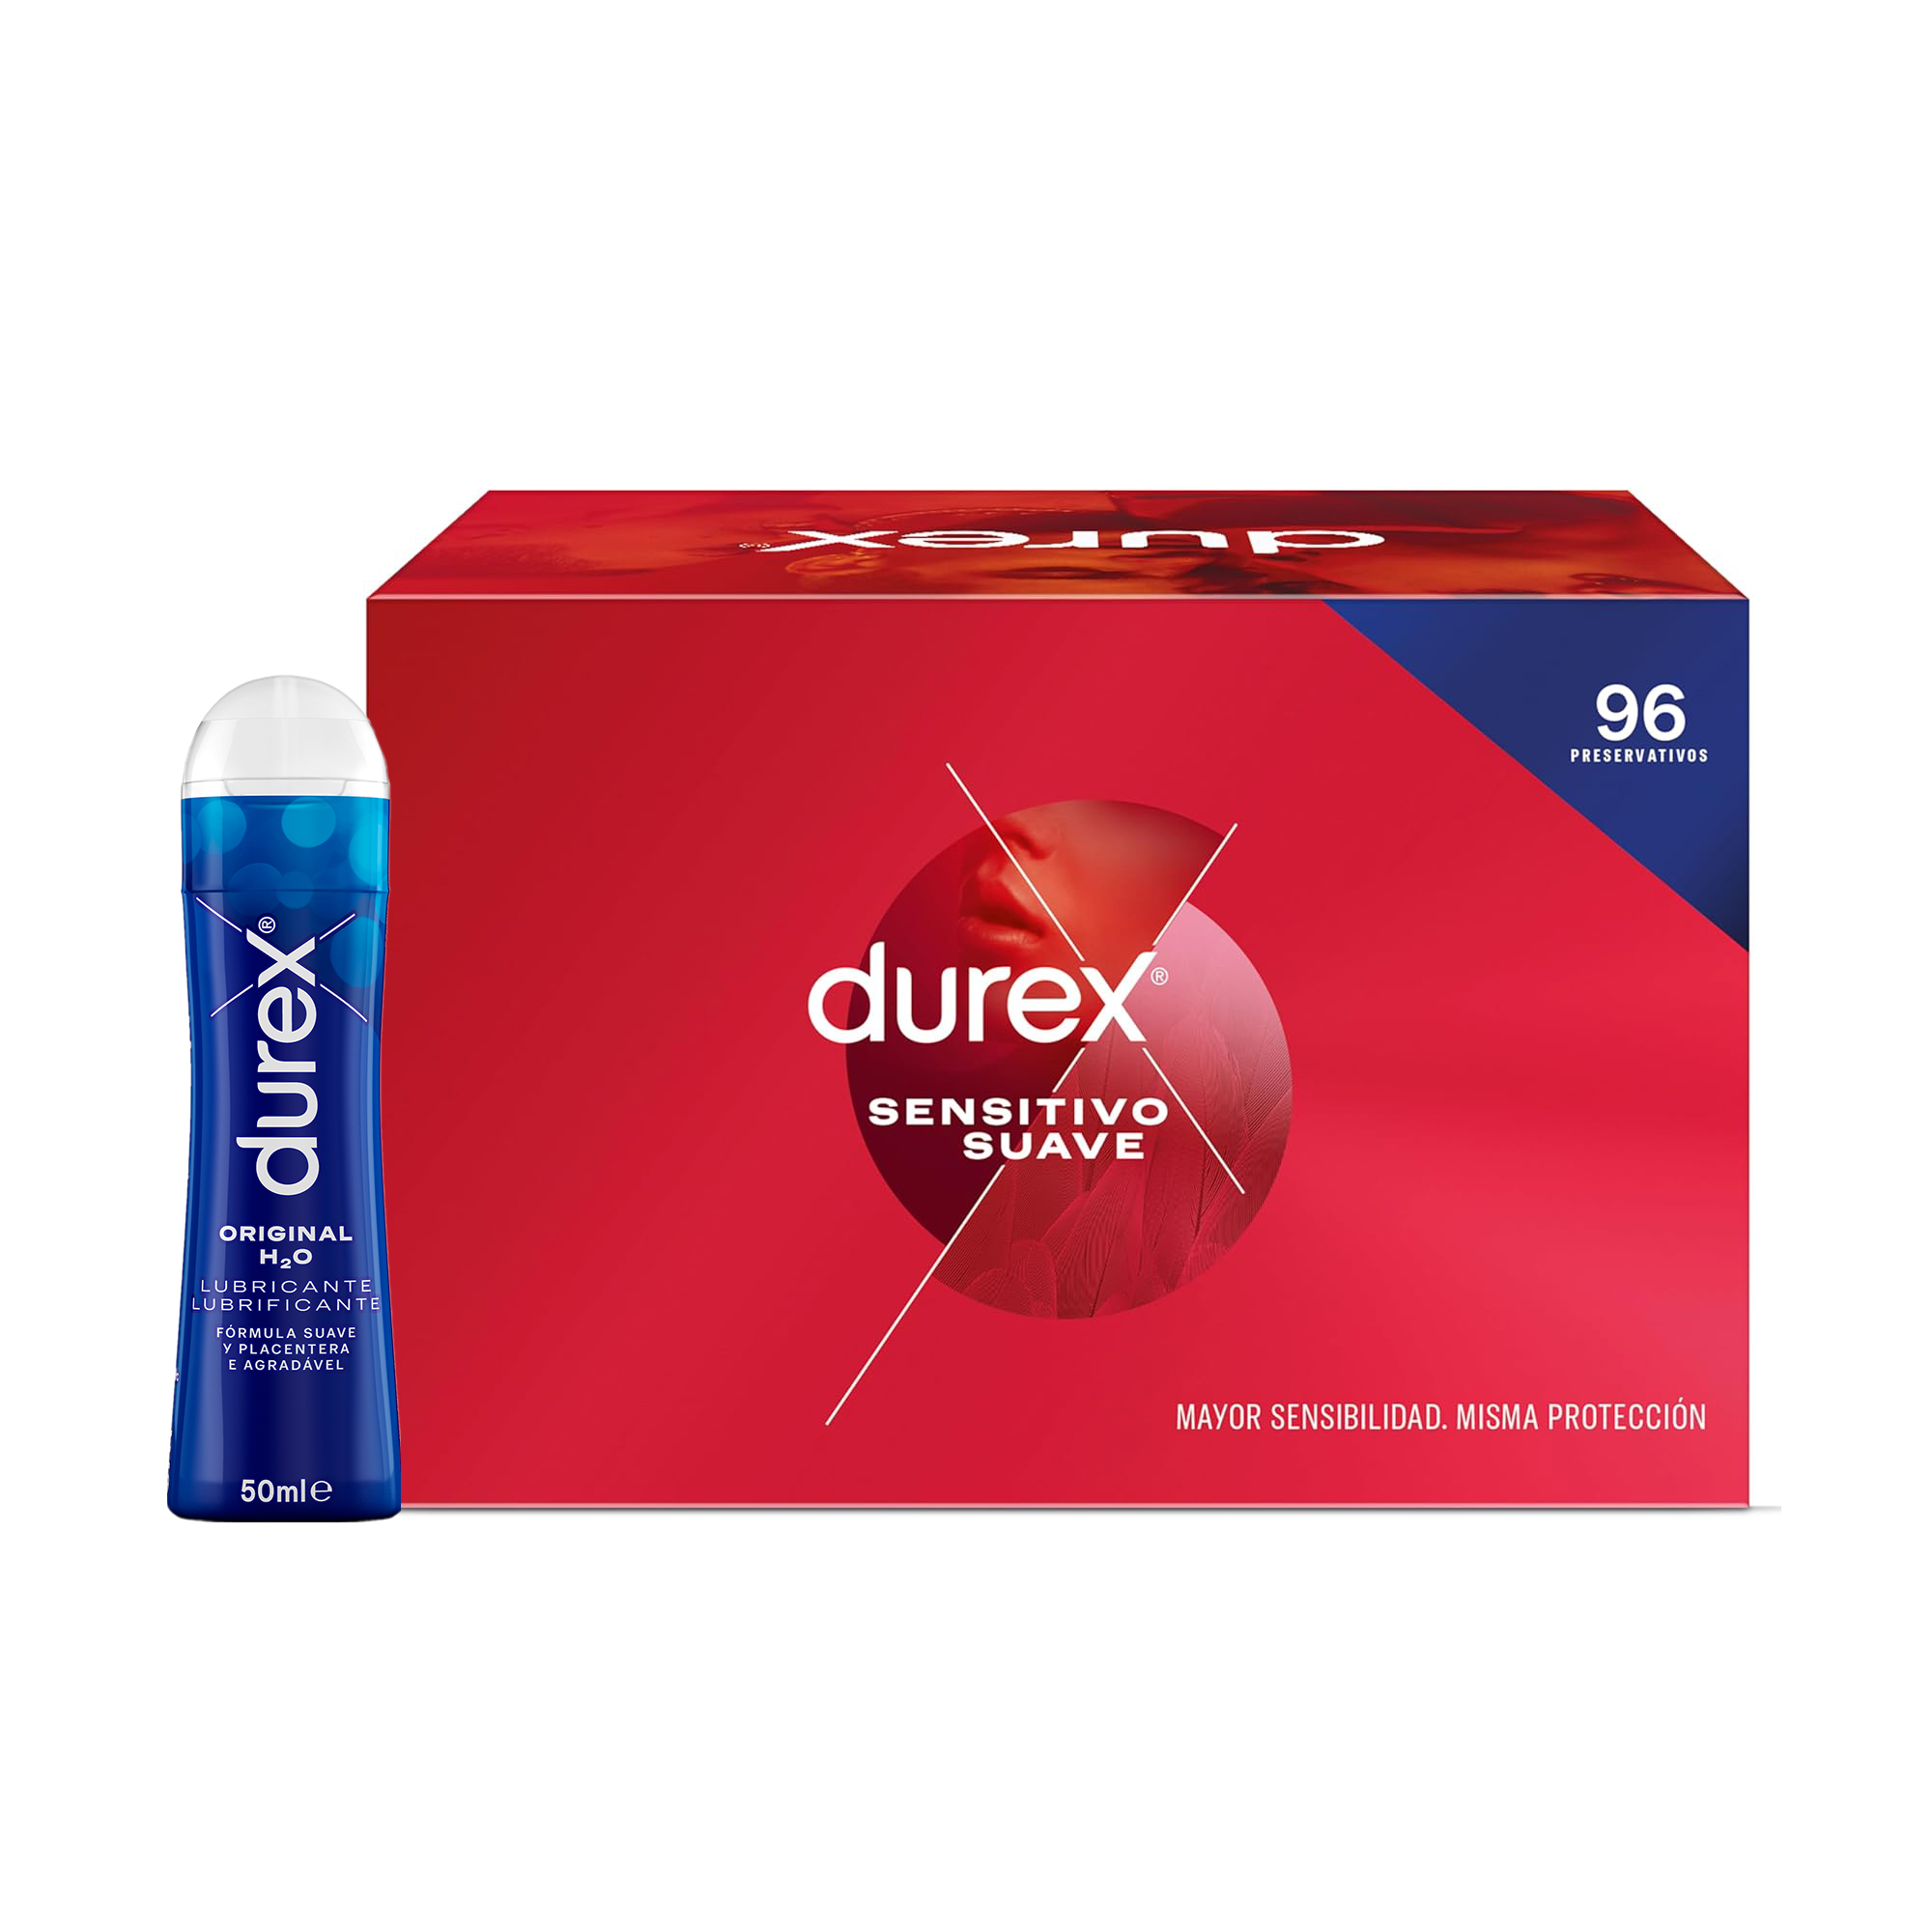 Durex - Durex Pack Preservativos Sensitivo Suave, Fino para Mayor Sensibilidad, 96 condones + Gel Lubricante Original h2o